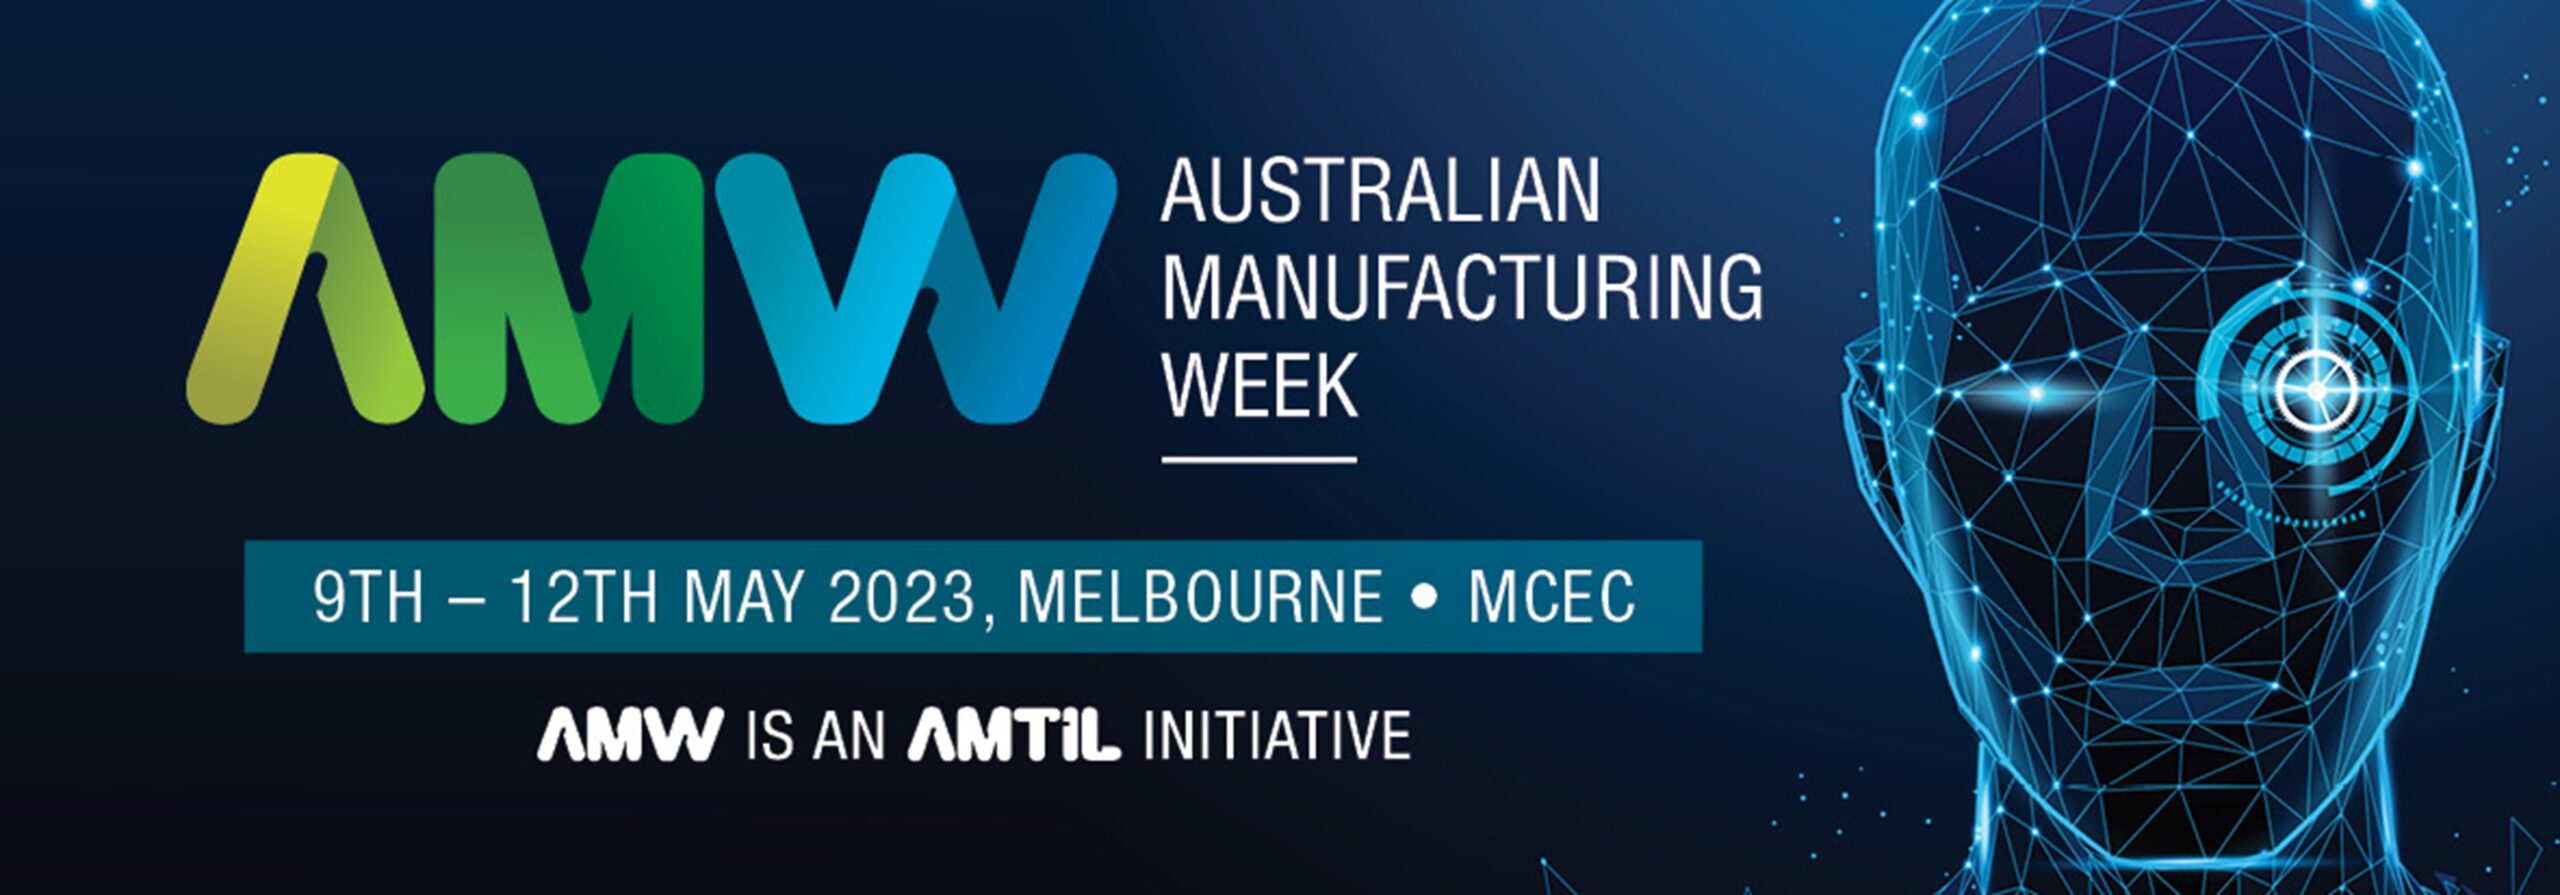 Australian Manufacturing Week